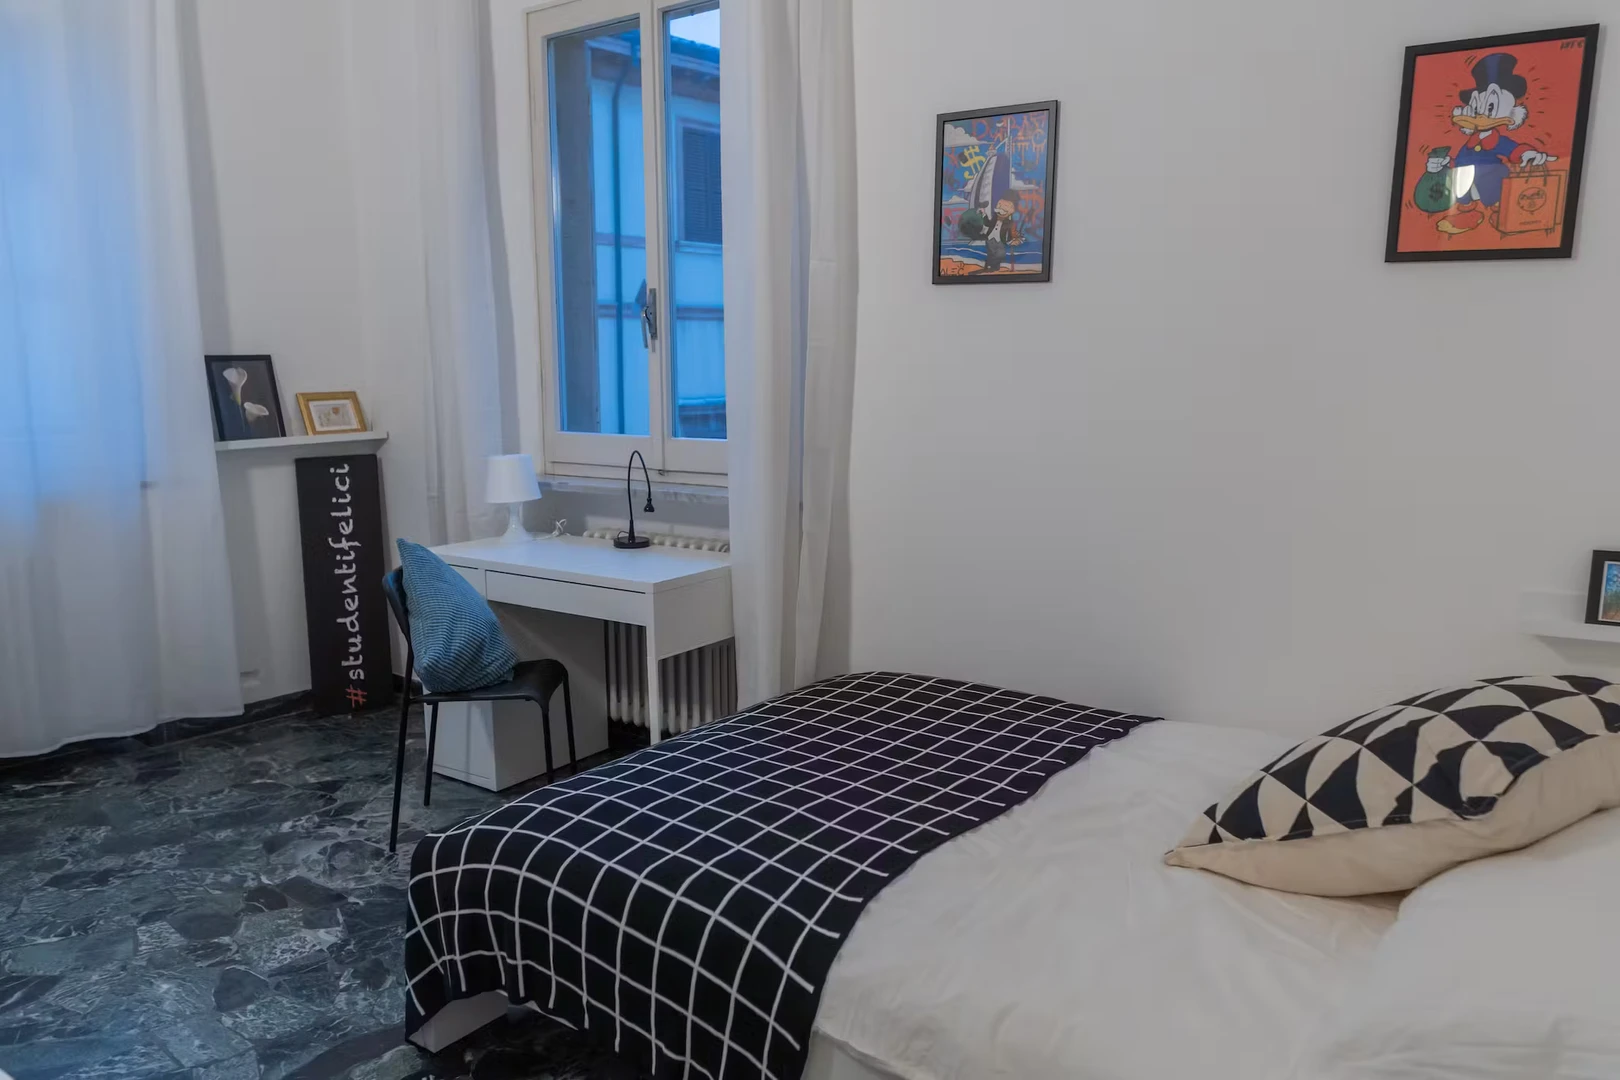 Rimini de çift kişilik yataklı kiralık oda